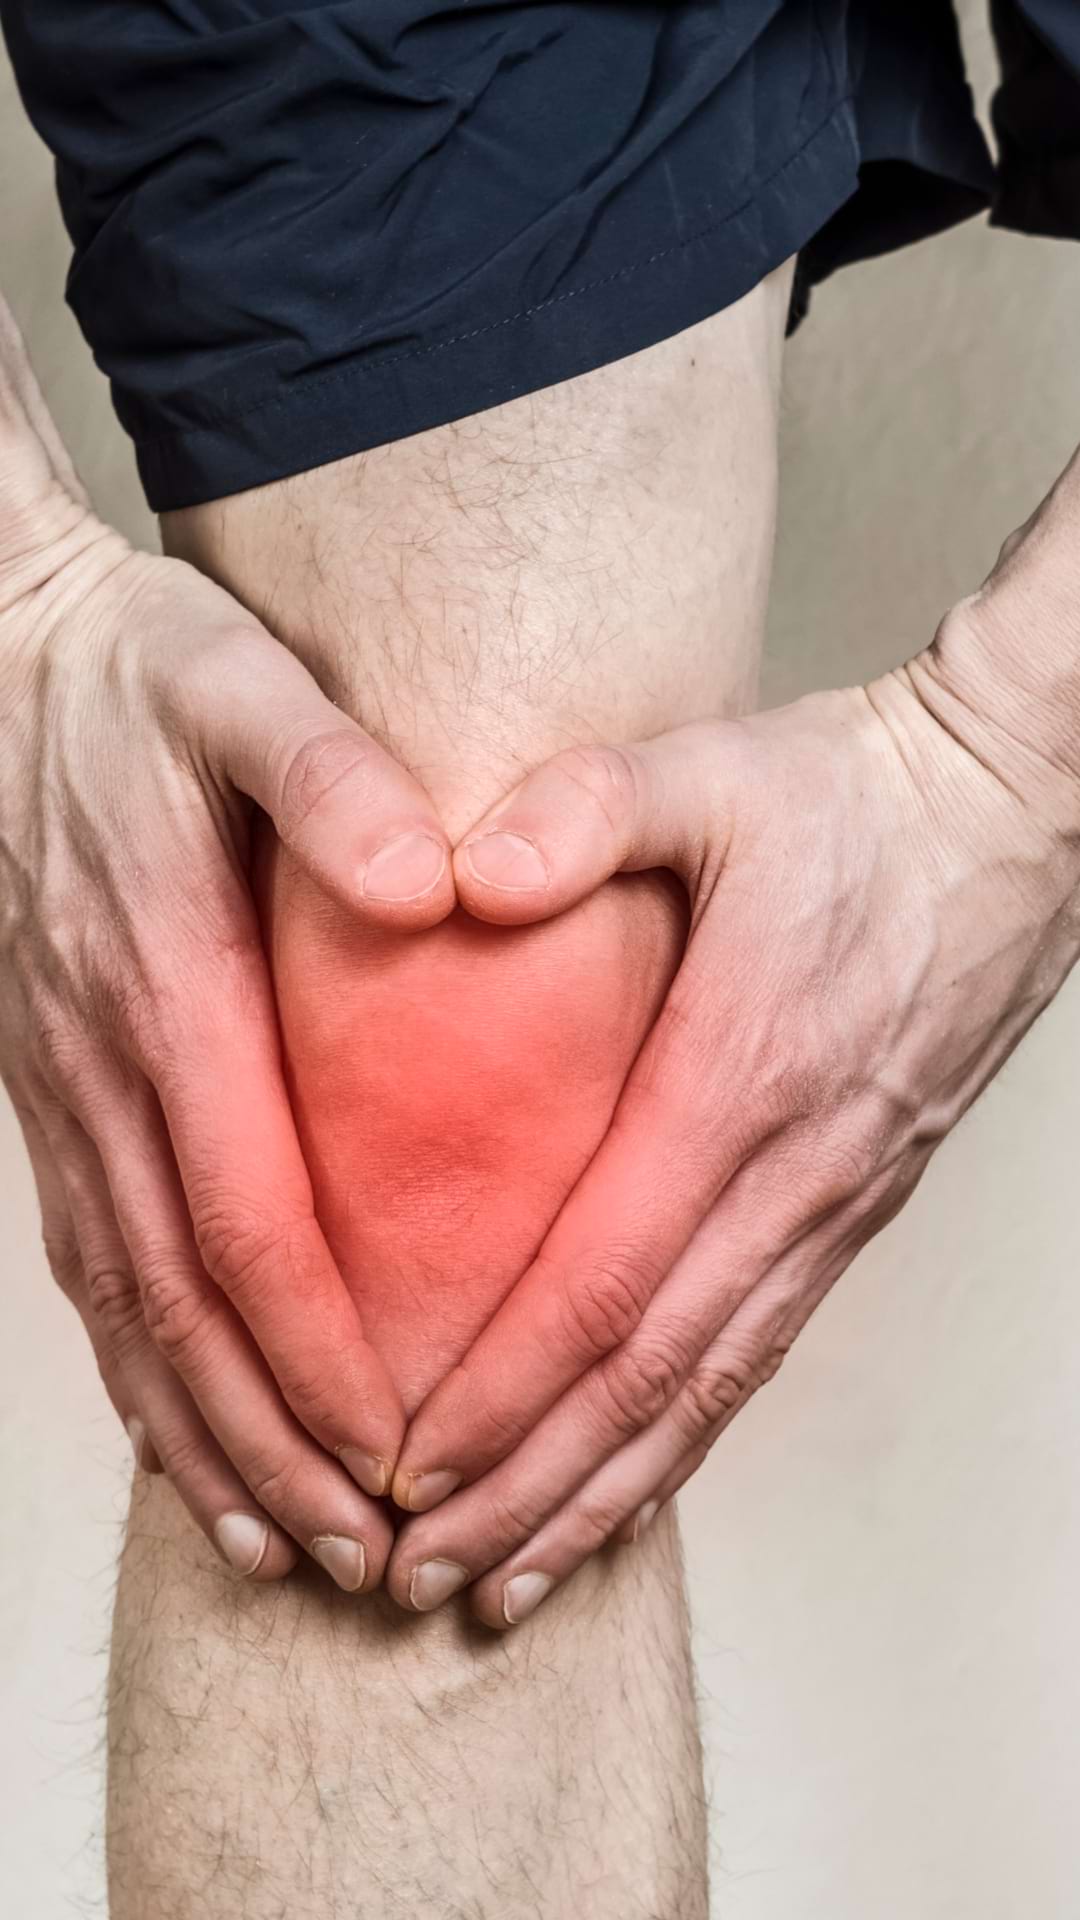 durerile de genunchi si coate durerea în articulația mâinii nu trece